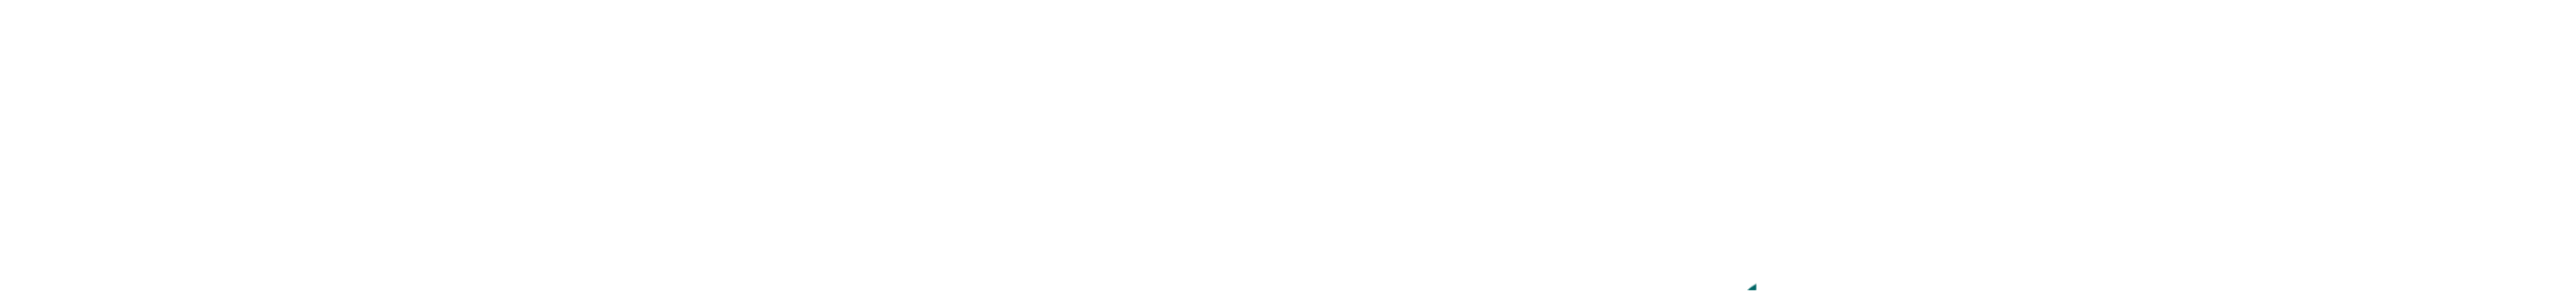 Marbella Lane logo